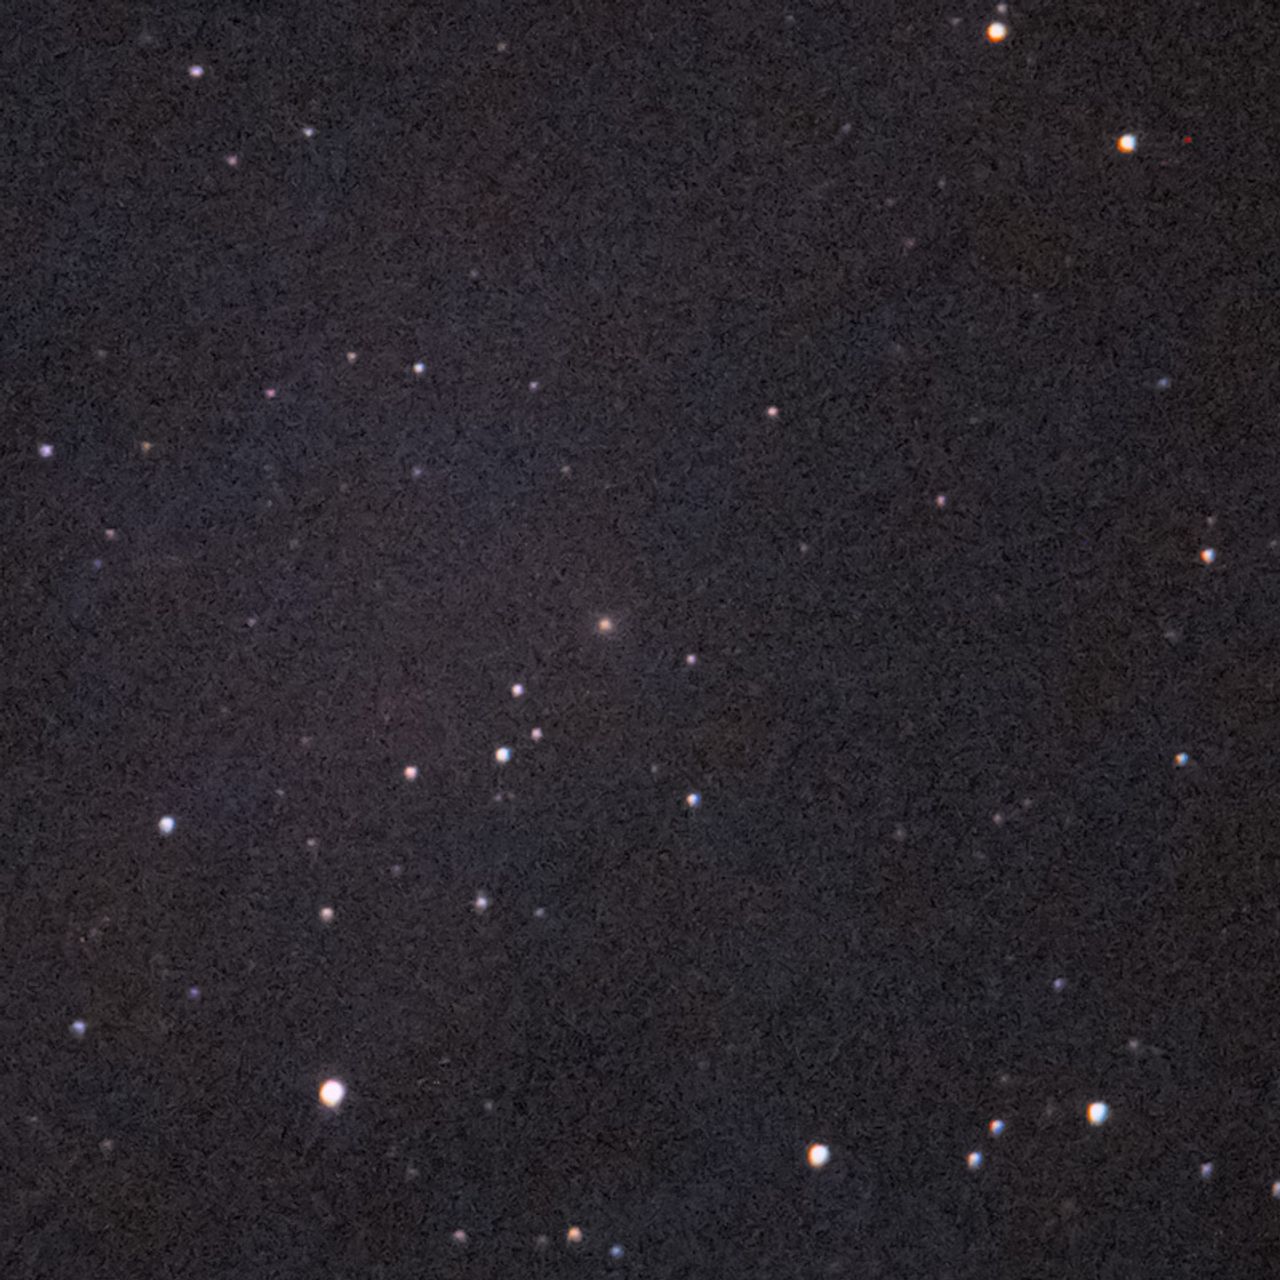 NGC2599